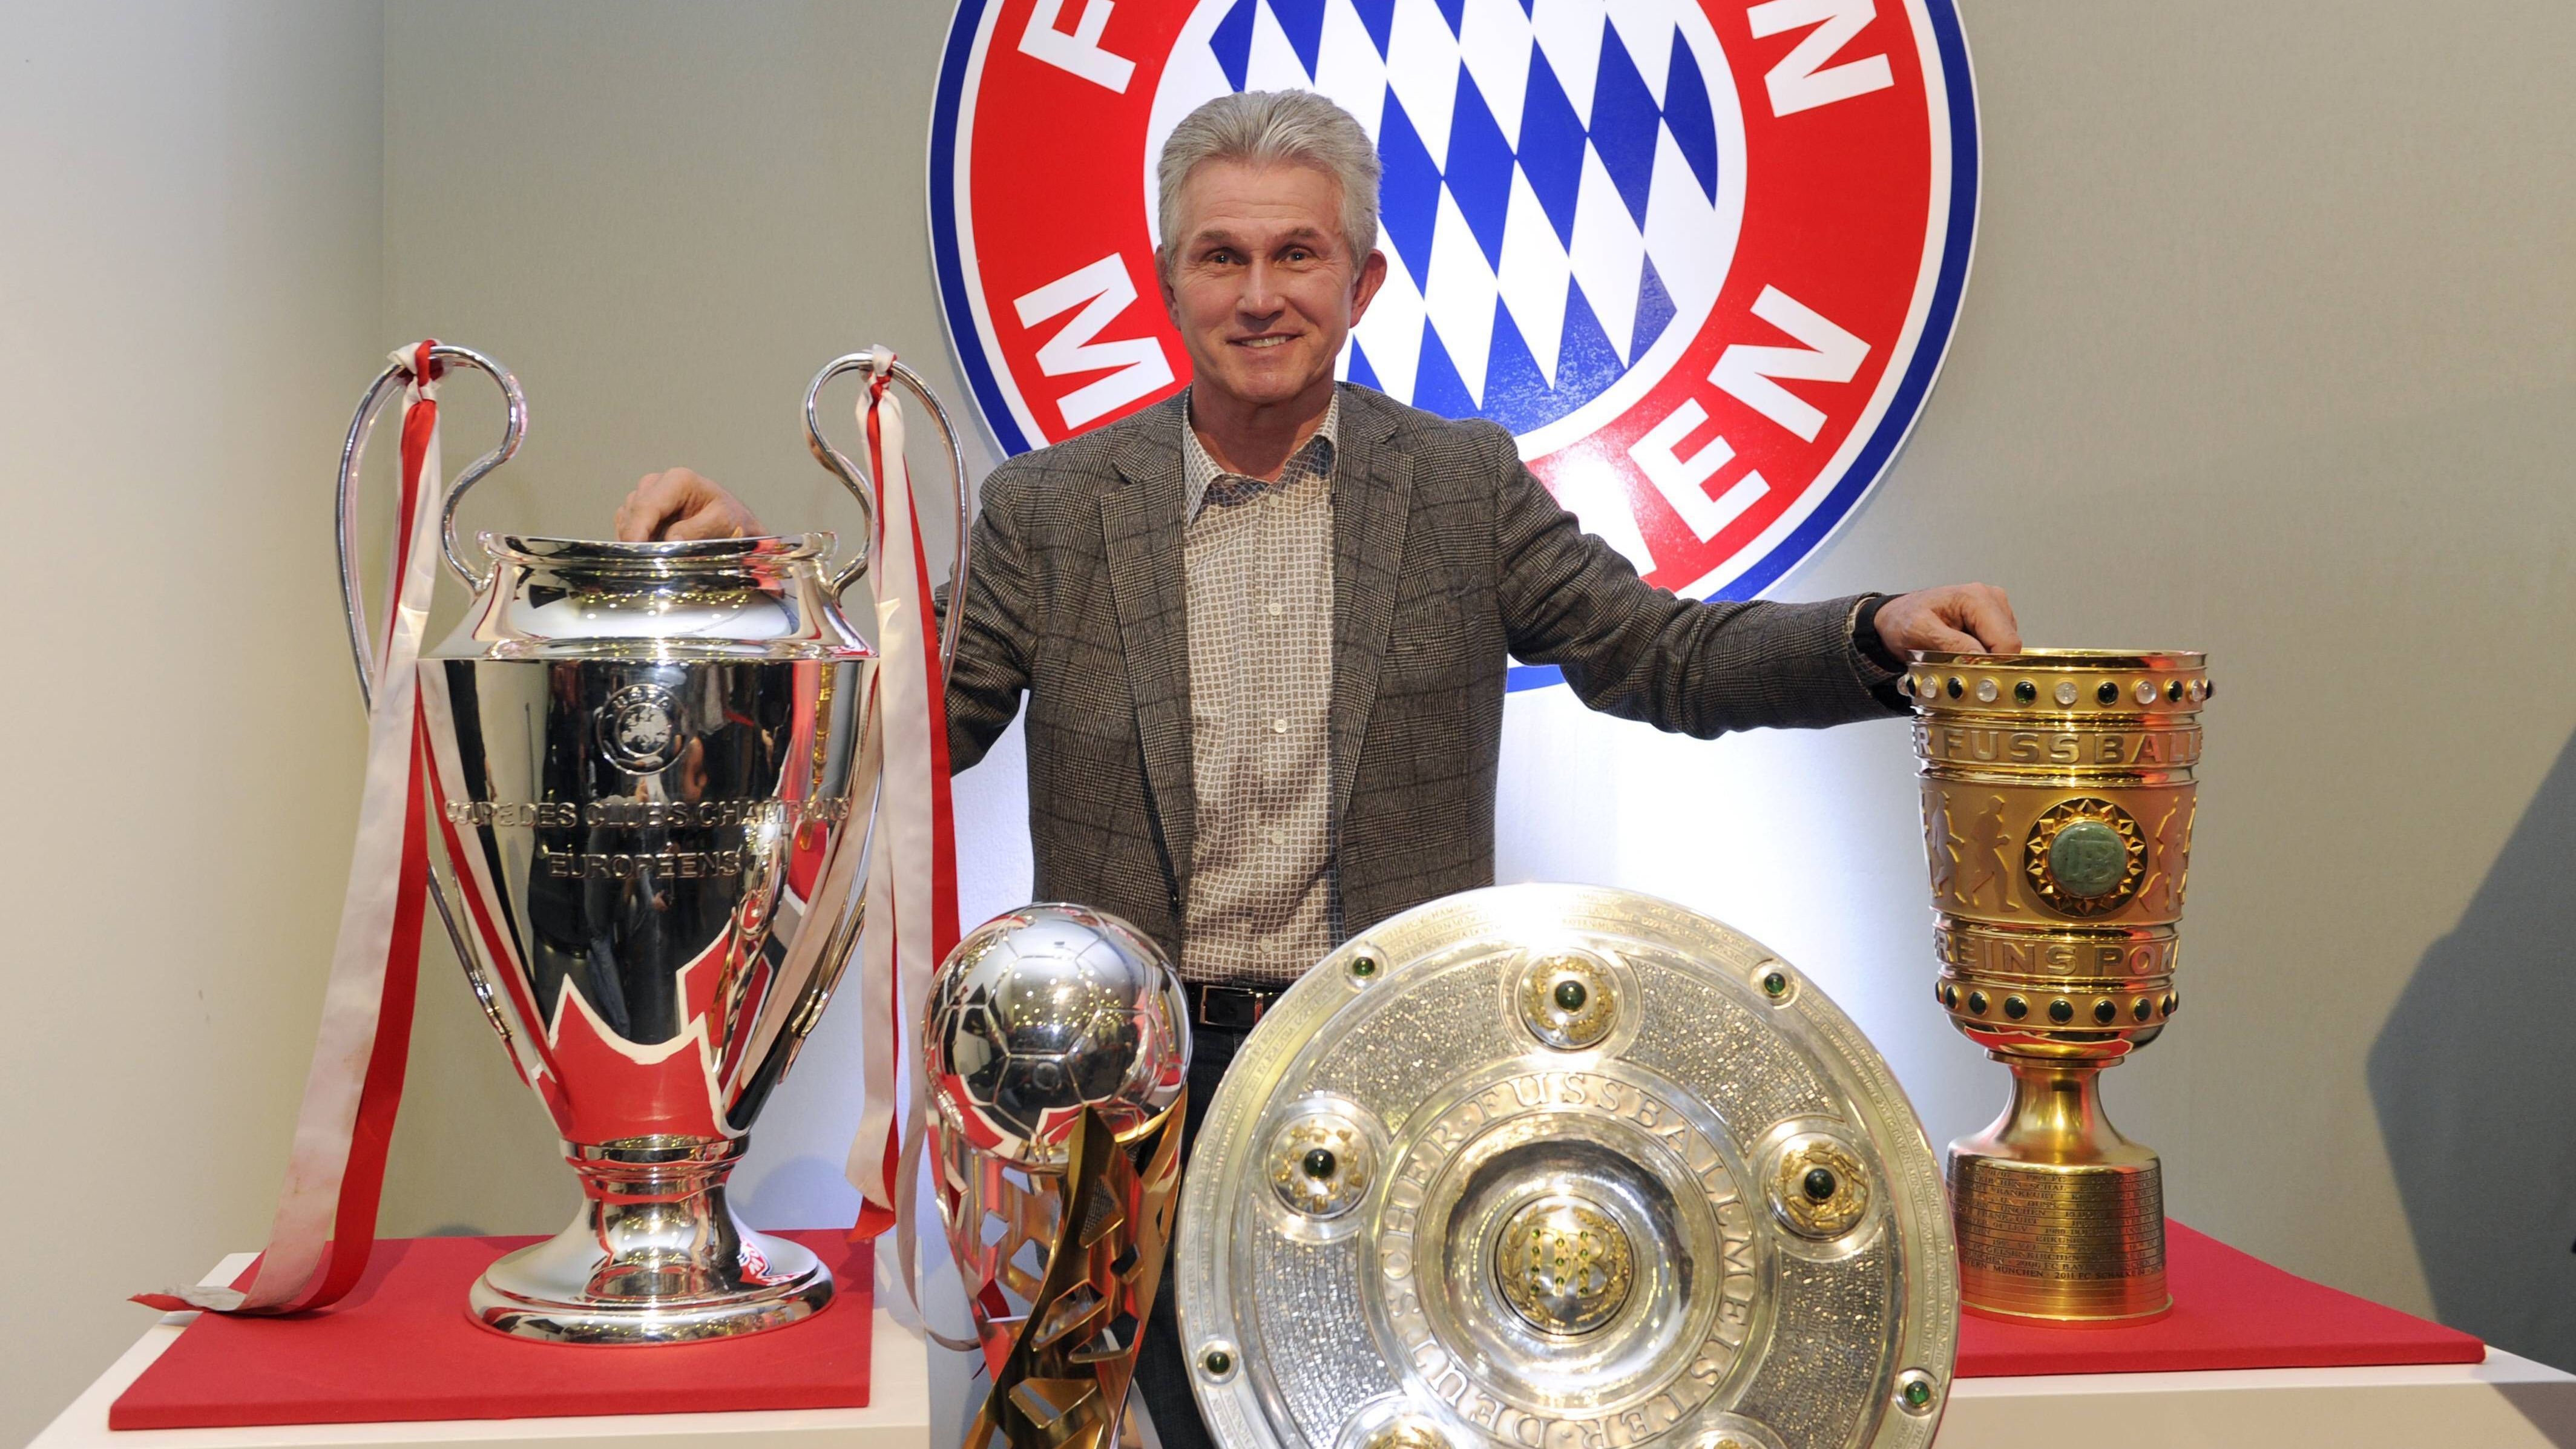 <strong>Jupp Heynckes (Bayern München)</strong><br>"2013 konnte ich beruhigt in den Ruhestand gehen", so Heynckes nach der Saison in einem Interview mit dem "Kicker". Nachfolger Pep Guardiola holte zwar die Meisterschaft und den DFB-Pokal - die Königsklasse gewann er allerdings nie.